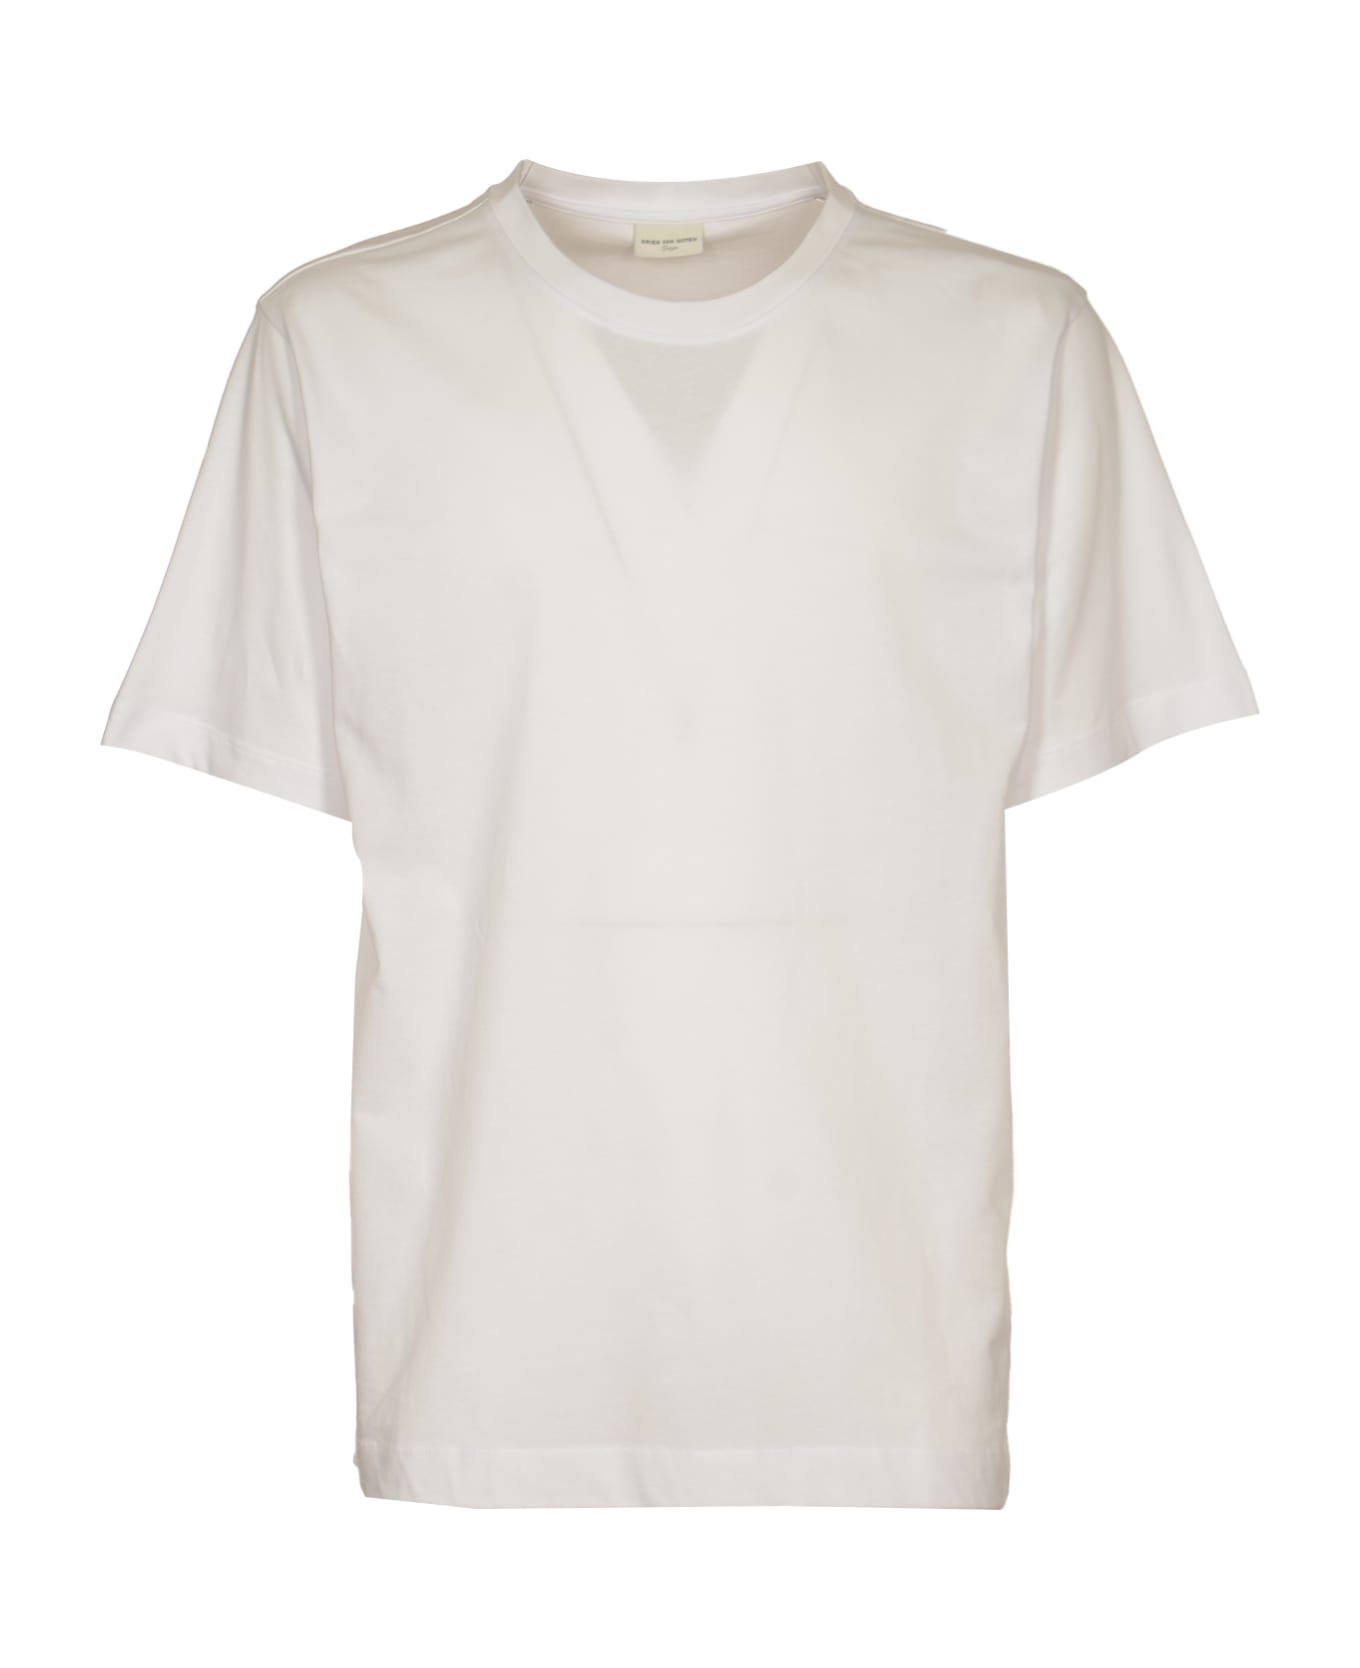 Dries Van Noten Hertz T-shirt - White